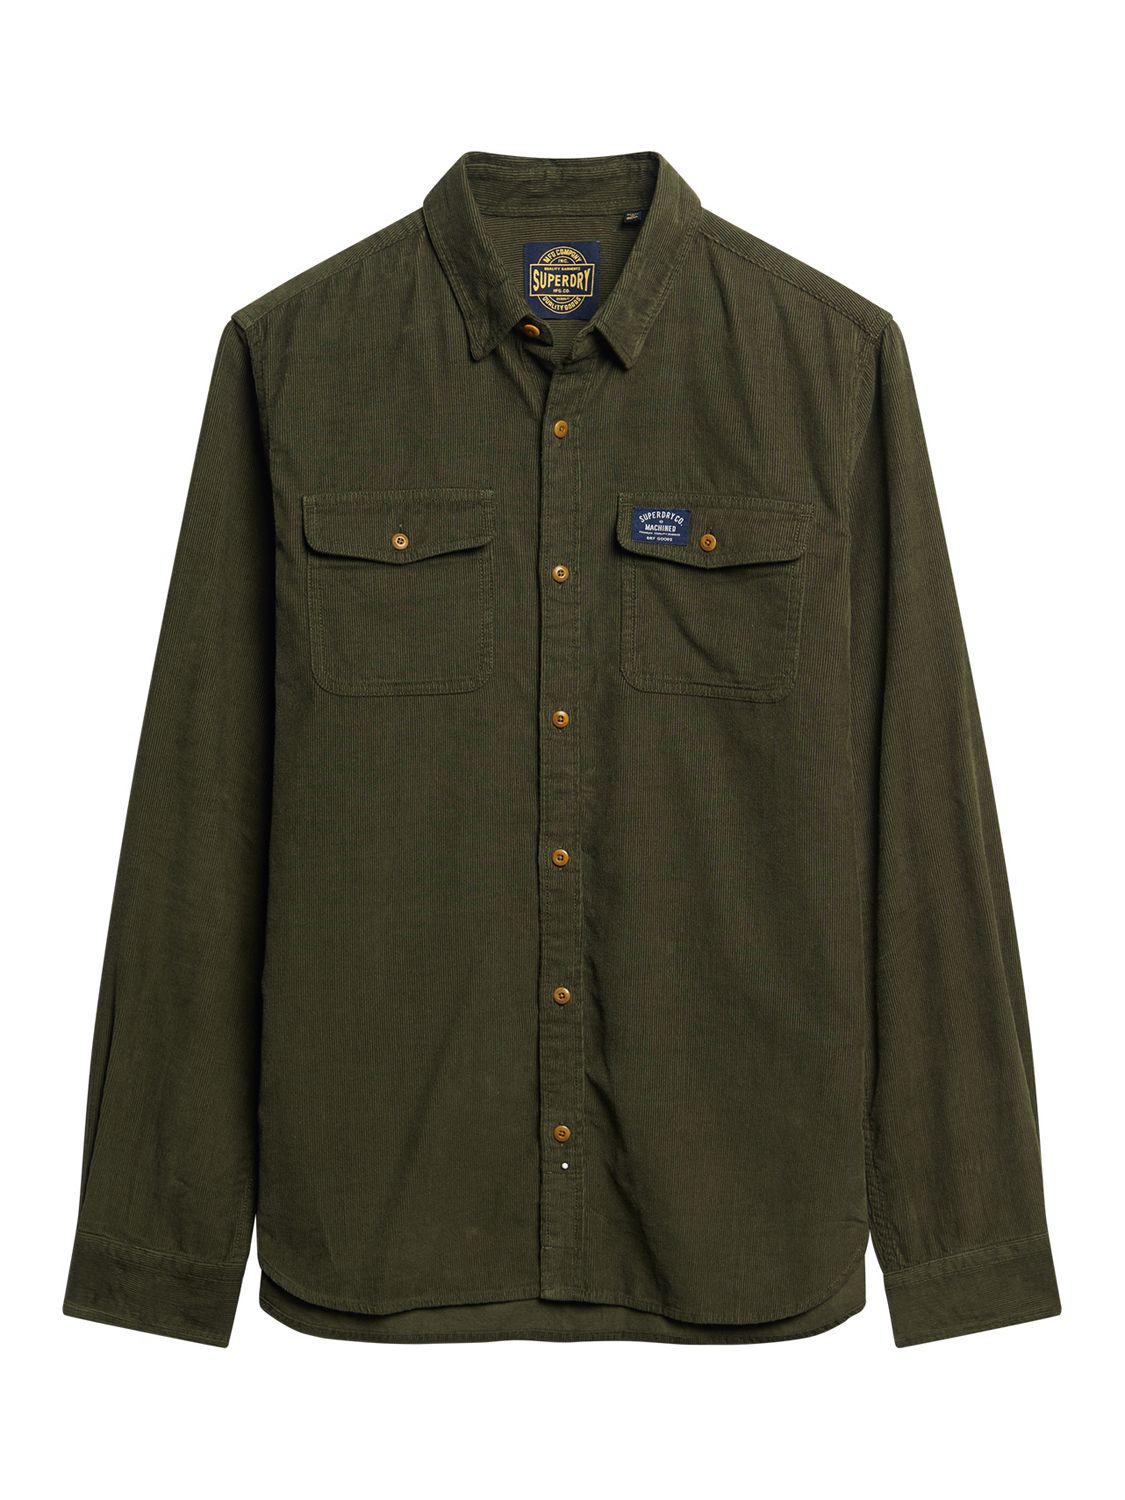 Superdry Trailsman Cord Shirt, Dark Moss Green, S